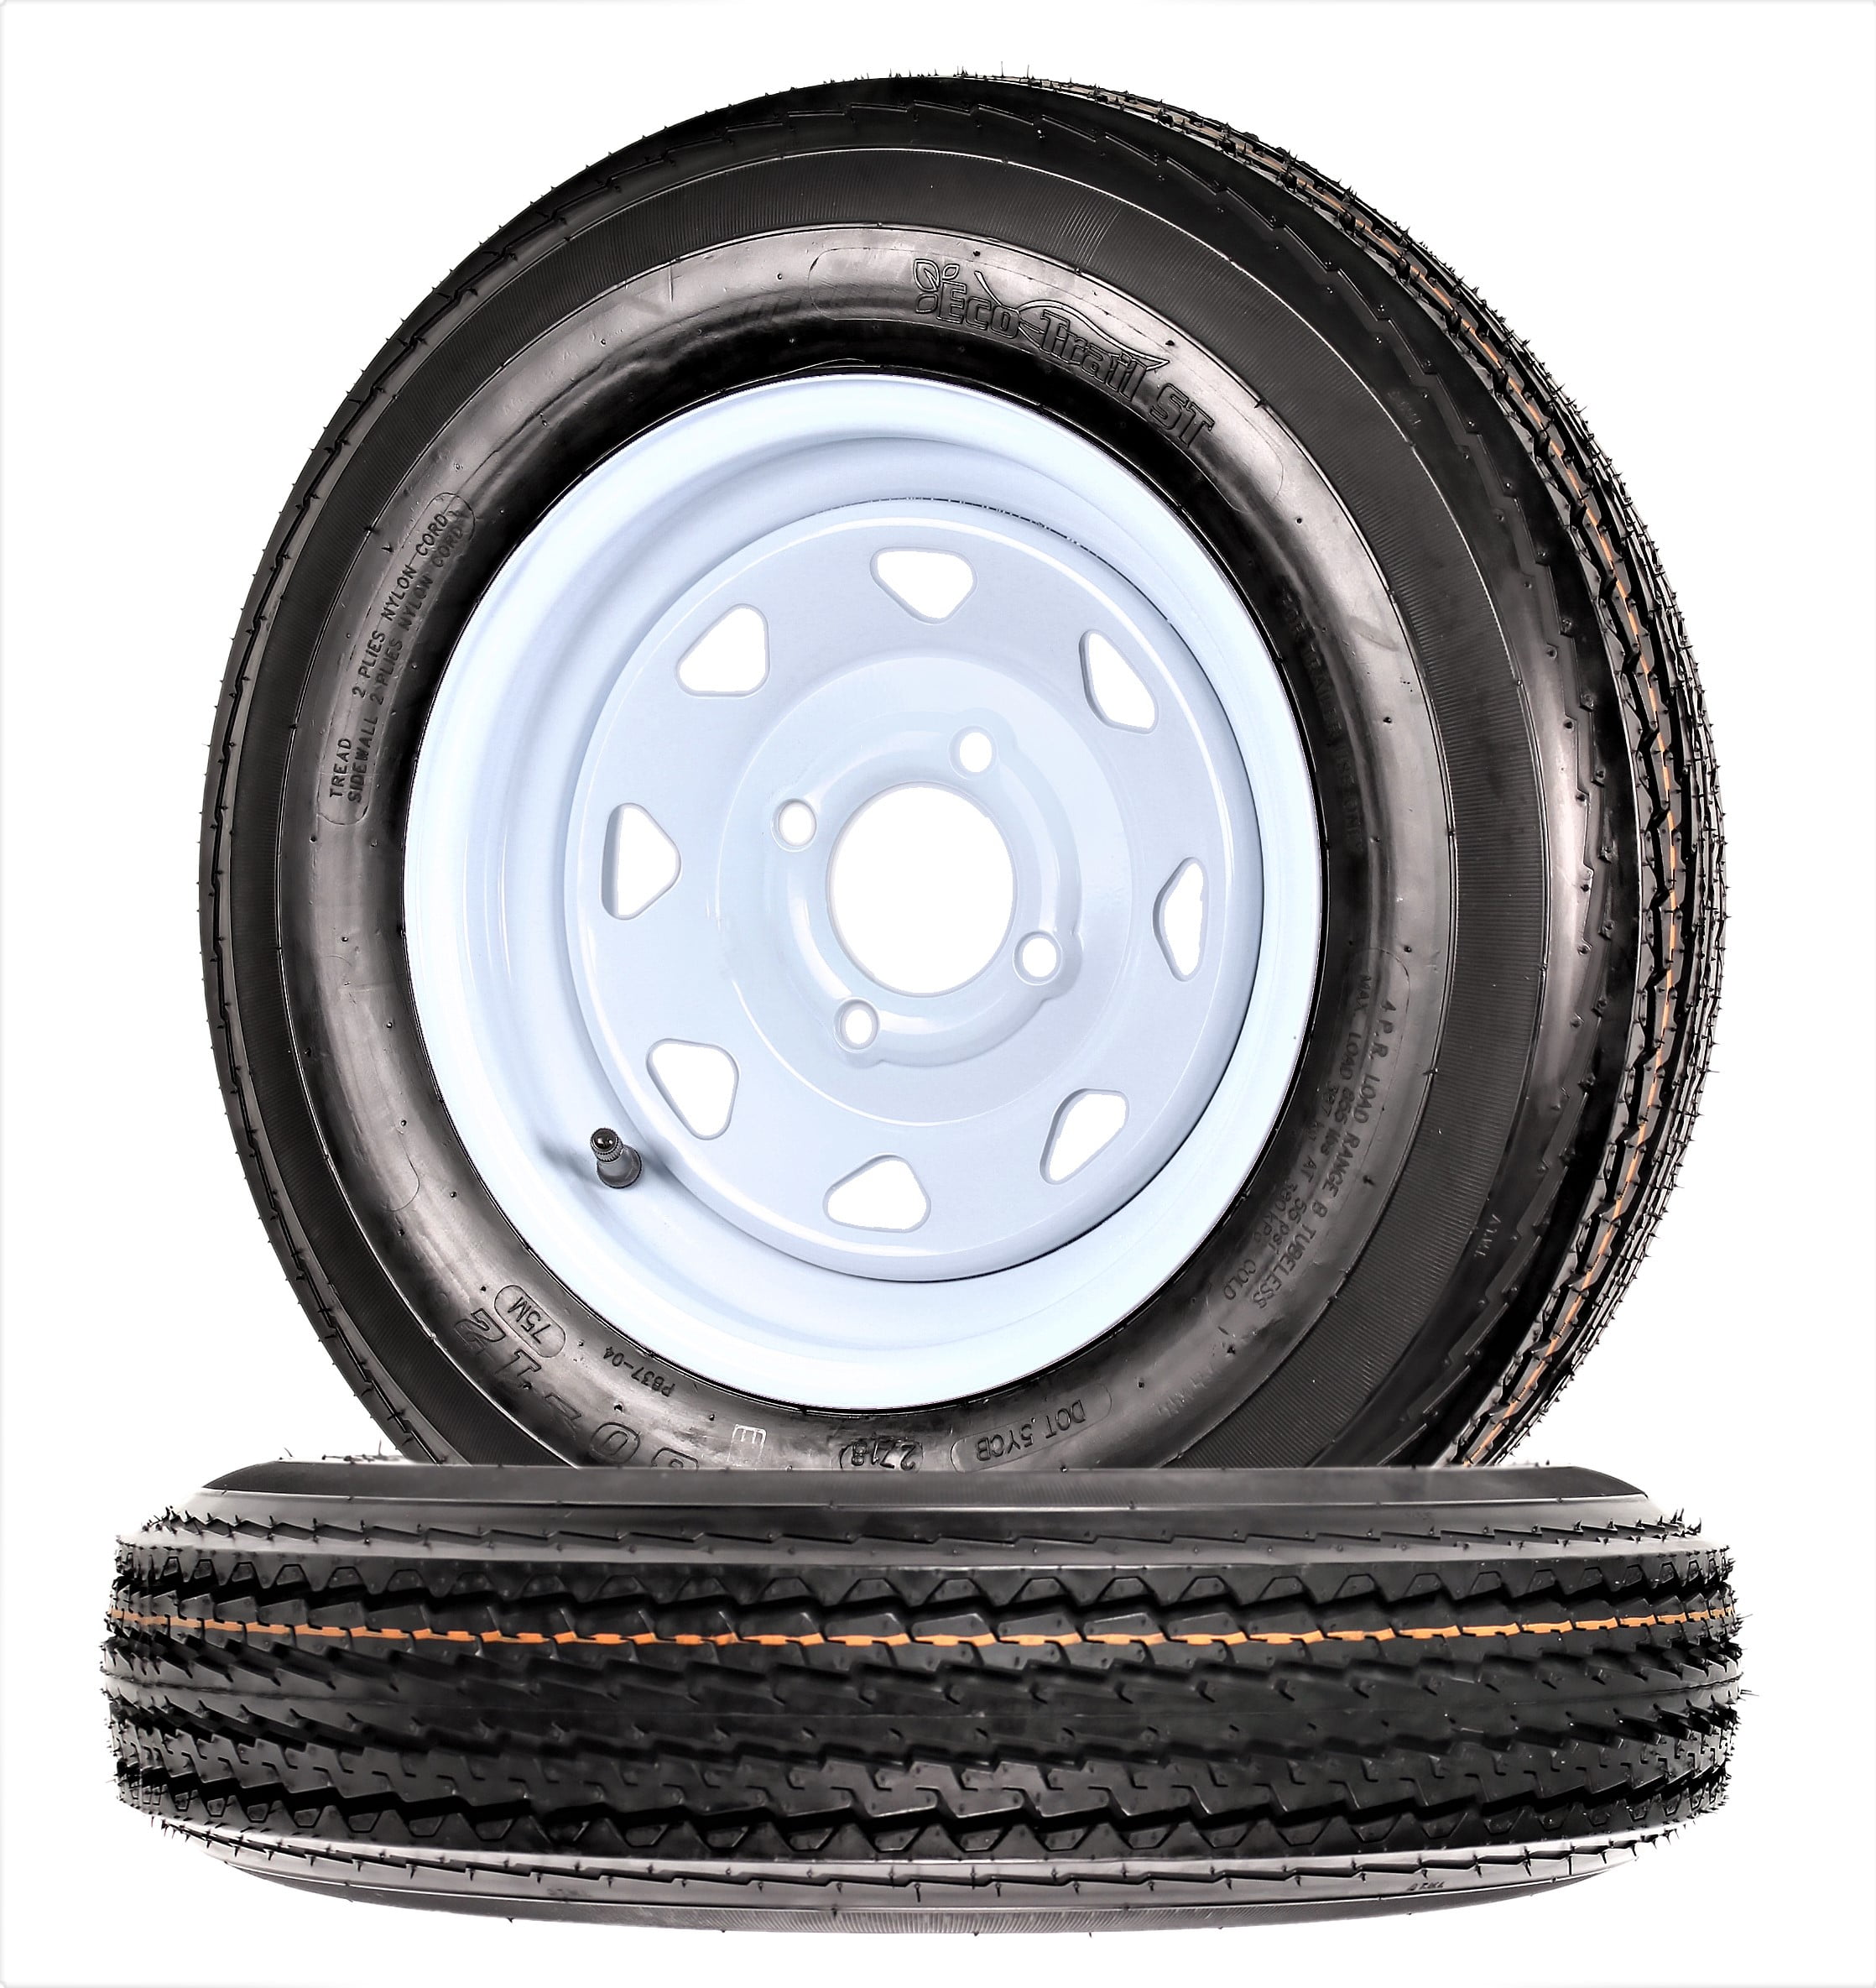 2* Loadstar 5.30-12 LRC Bias Trailer Tire on 12" 5 Lug White Spoke Wheel 5.30x12 